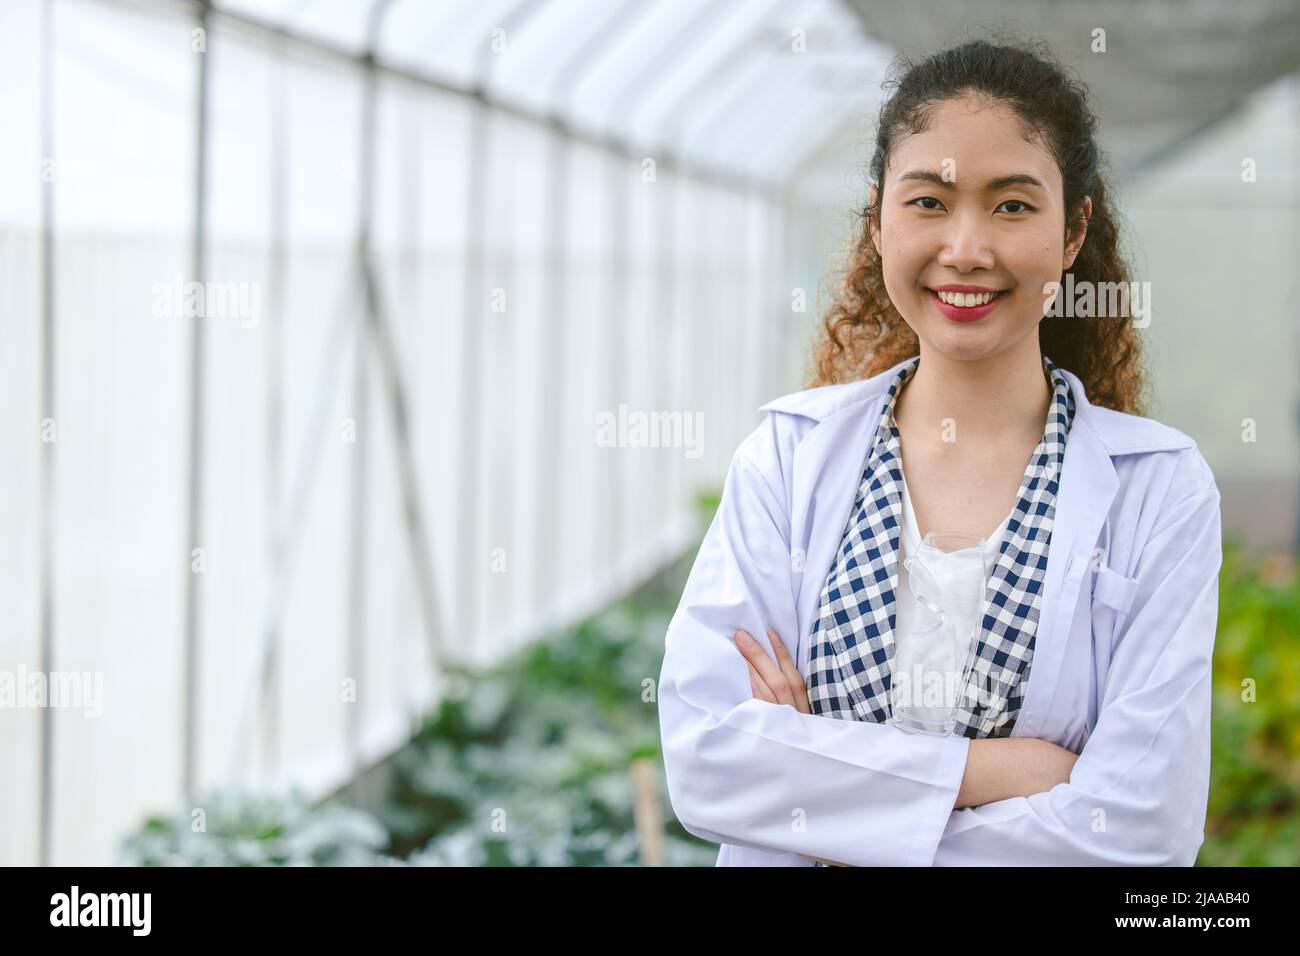 Portrait glückliches Lächeln junge moderne Bauernplantage mit Wissenschaft und Technik Stockfoto